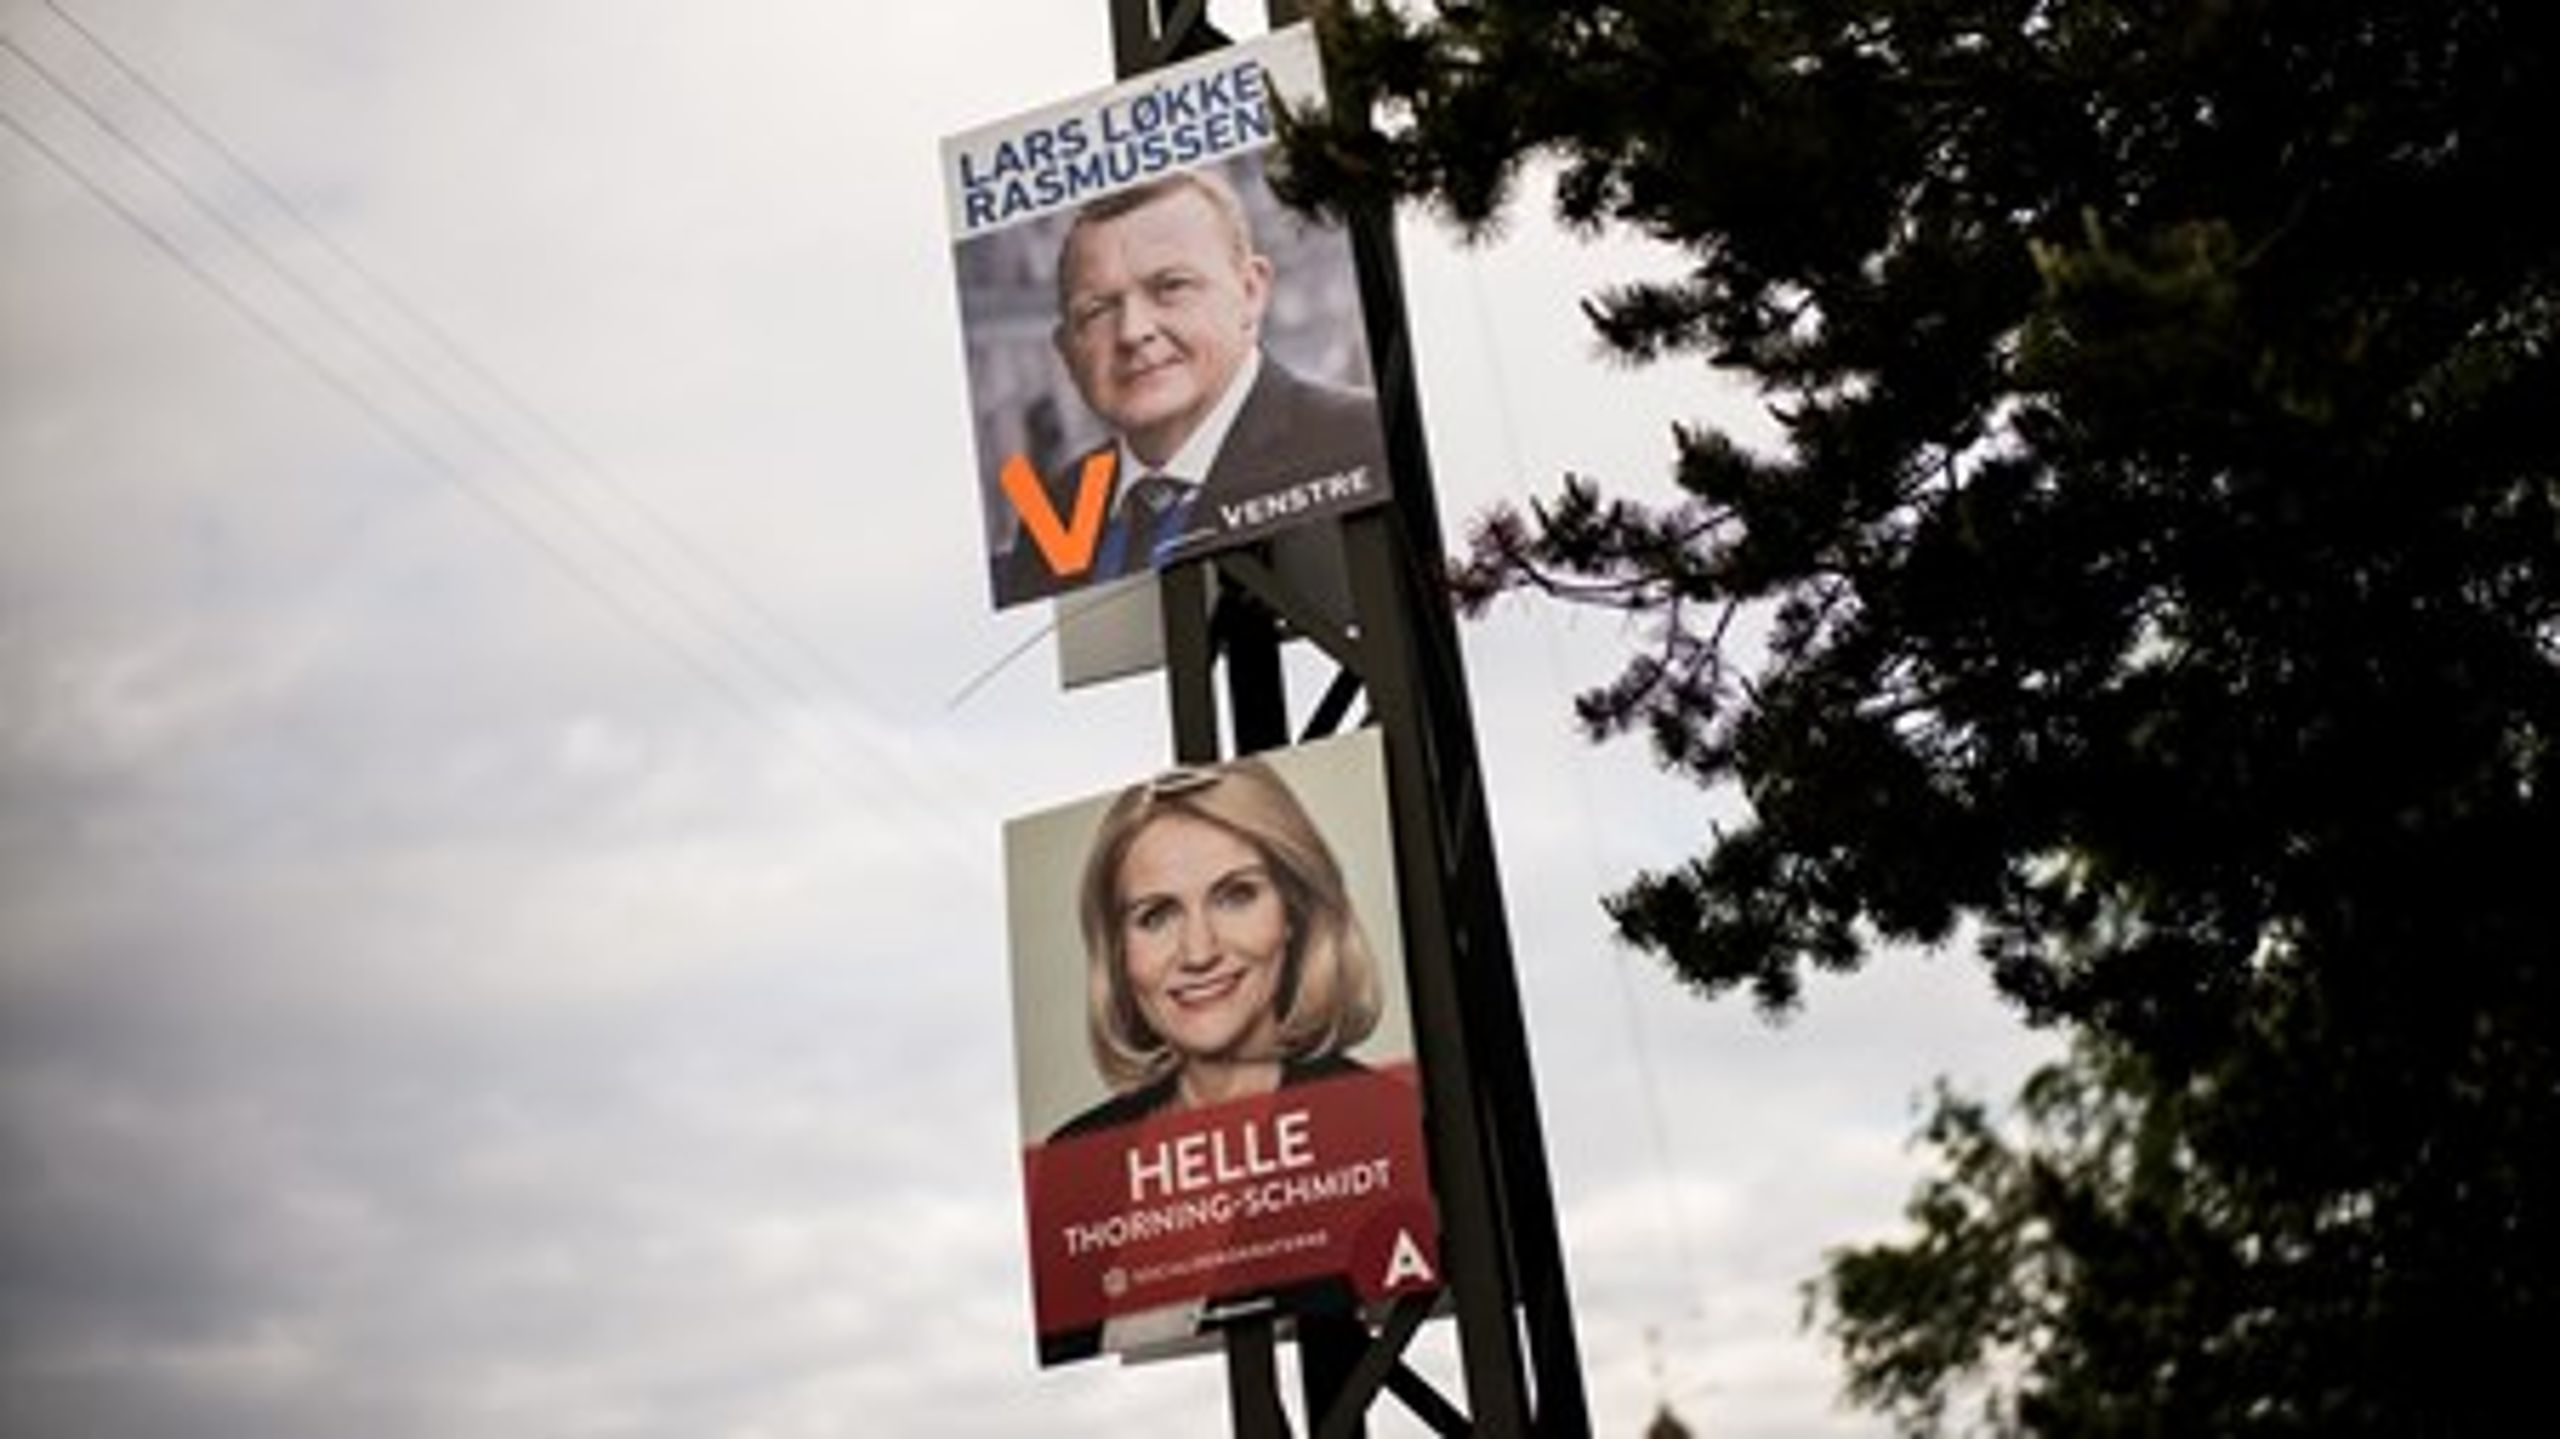 Socialdemokraterne og Venstre var hinandens hovedmodstandere i juni, men mange Venstre-vælgere ser alligevel positivt på Socialdemokratiet.<br>